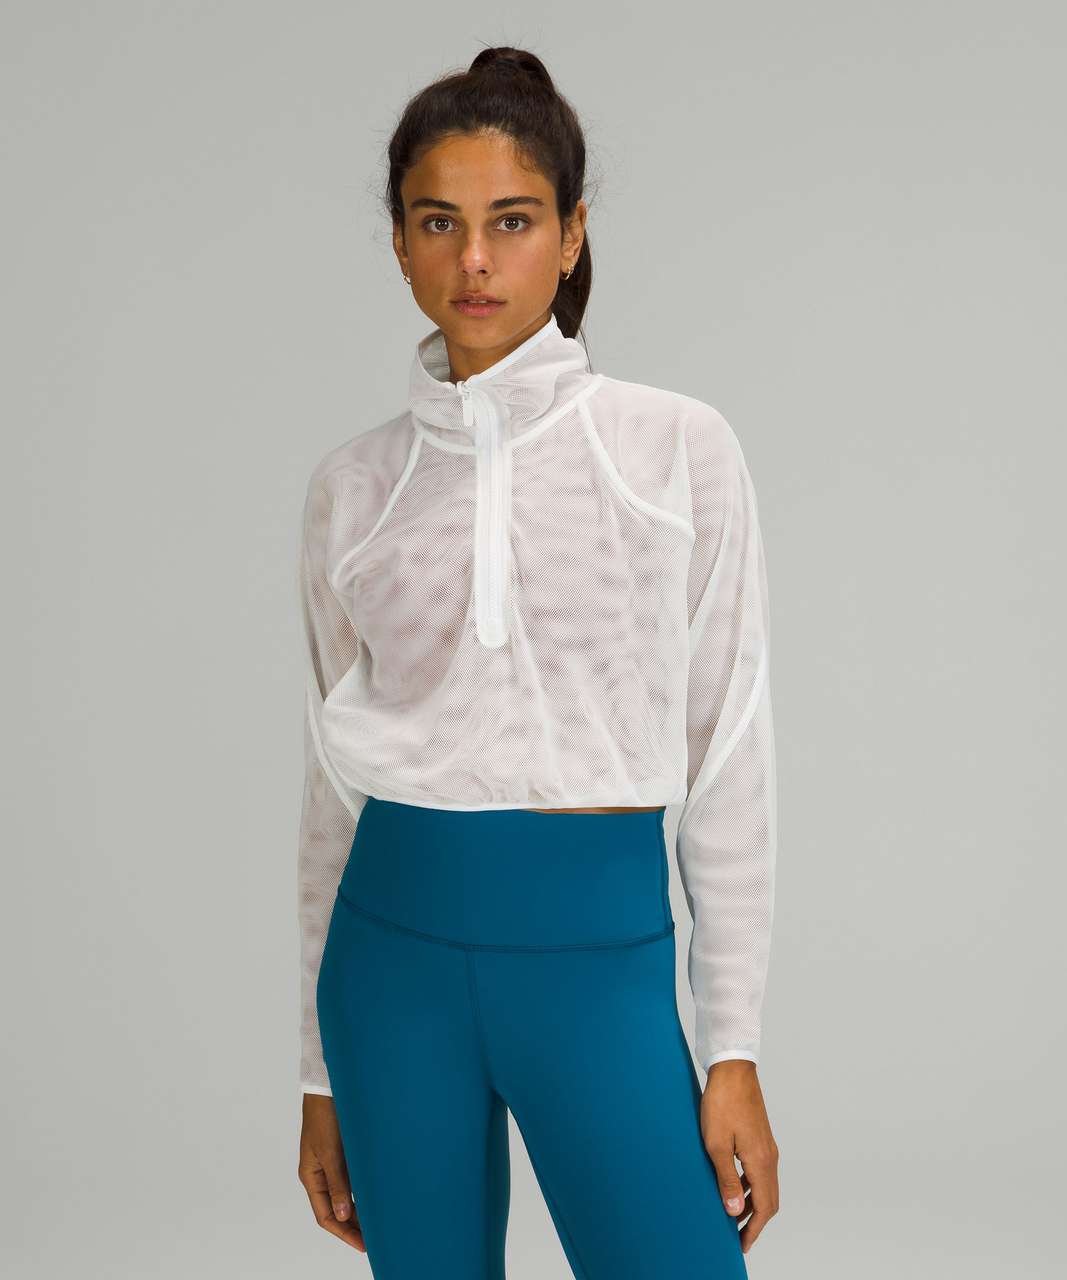 Lululemon Reversible Jacket Women's 8 Full Zip White Track Jacket  Thumbholes